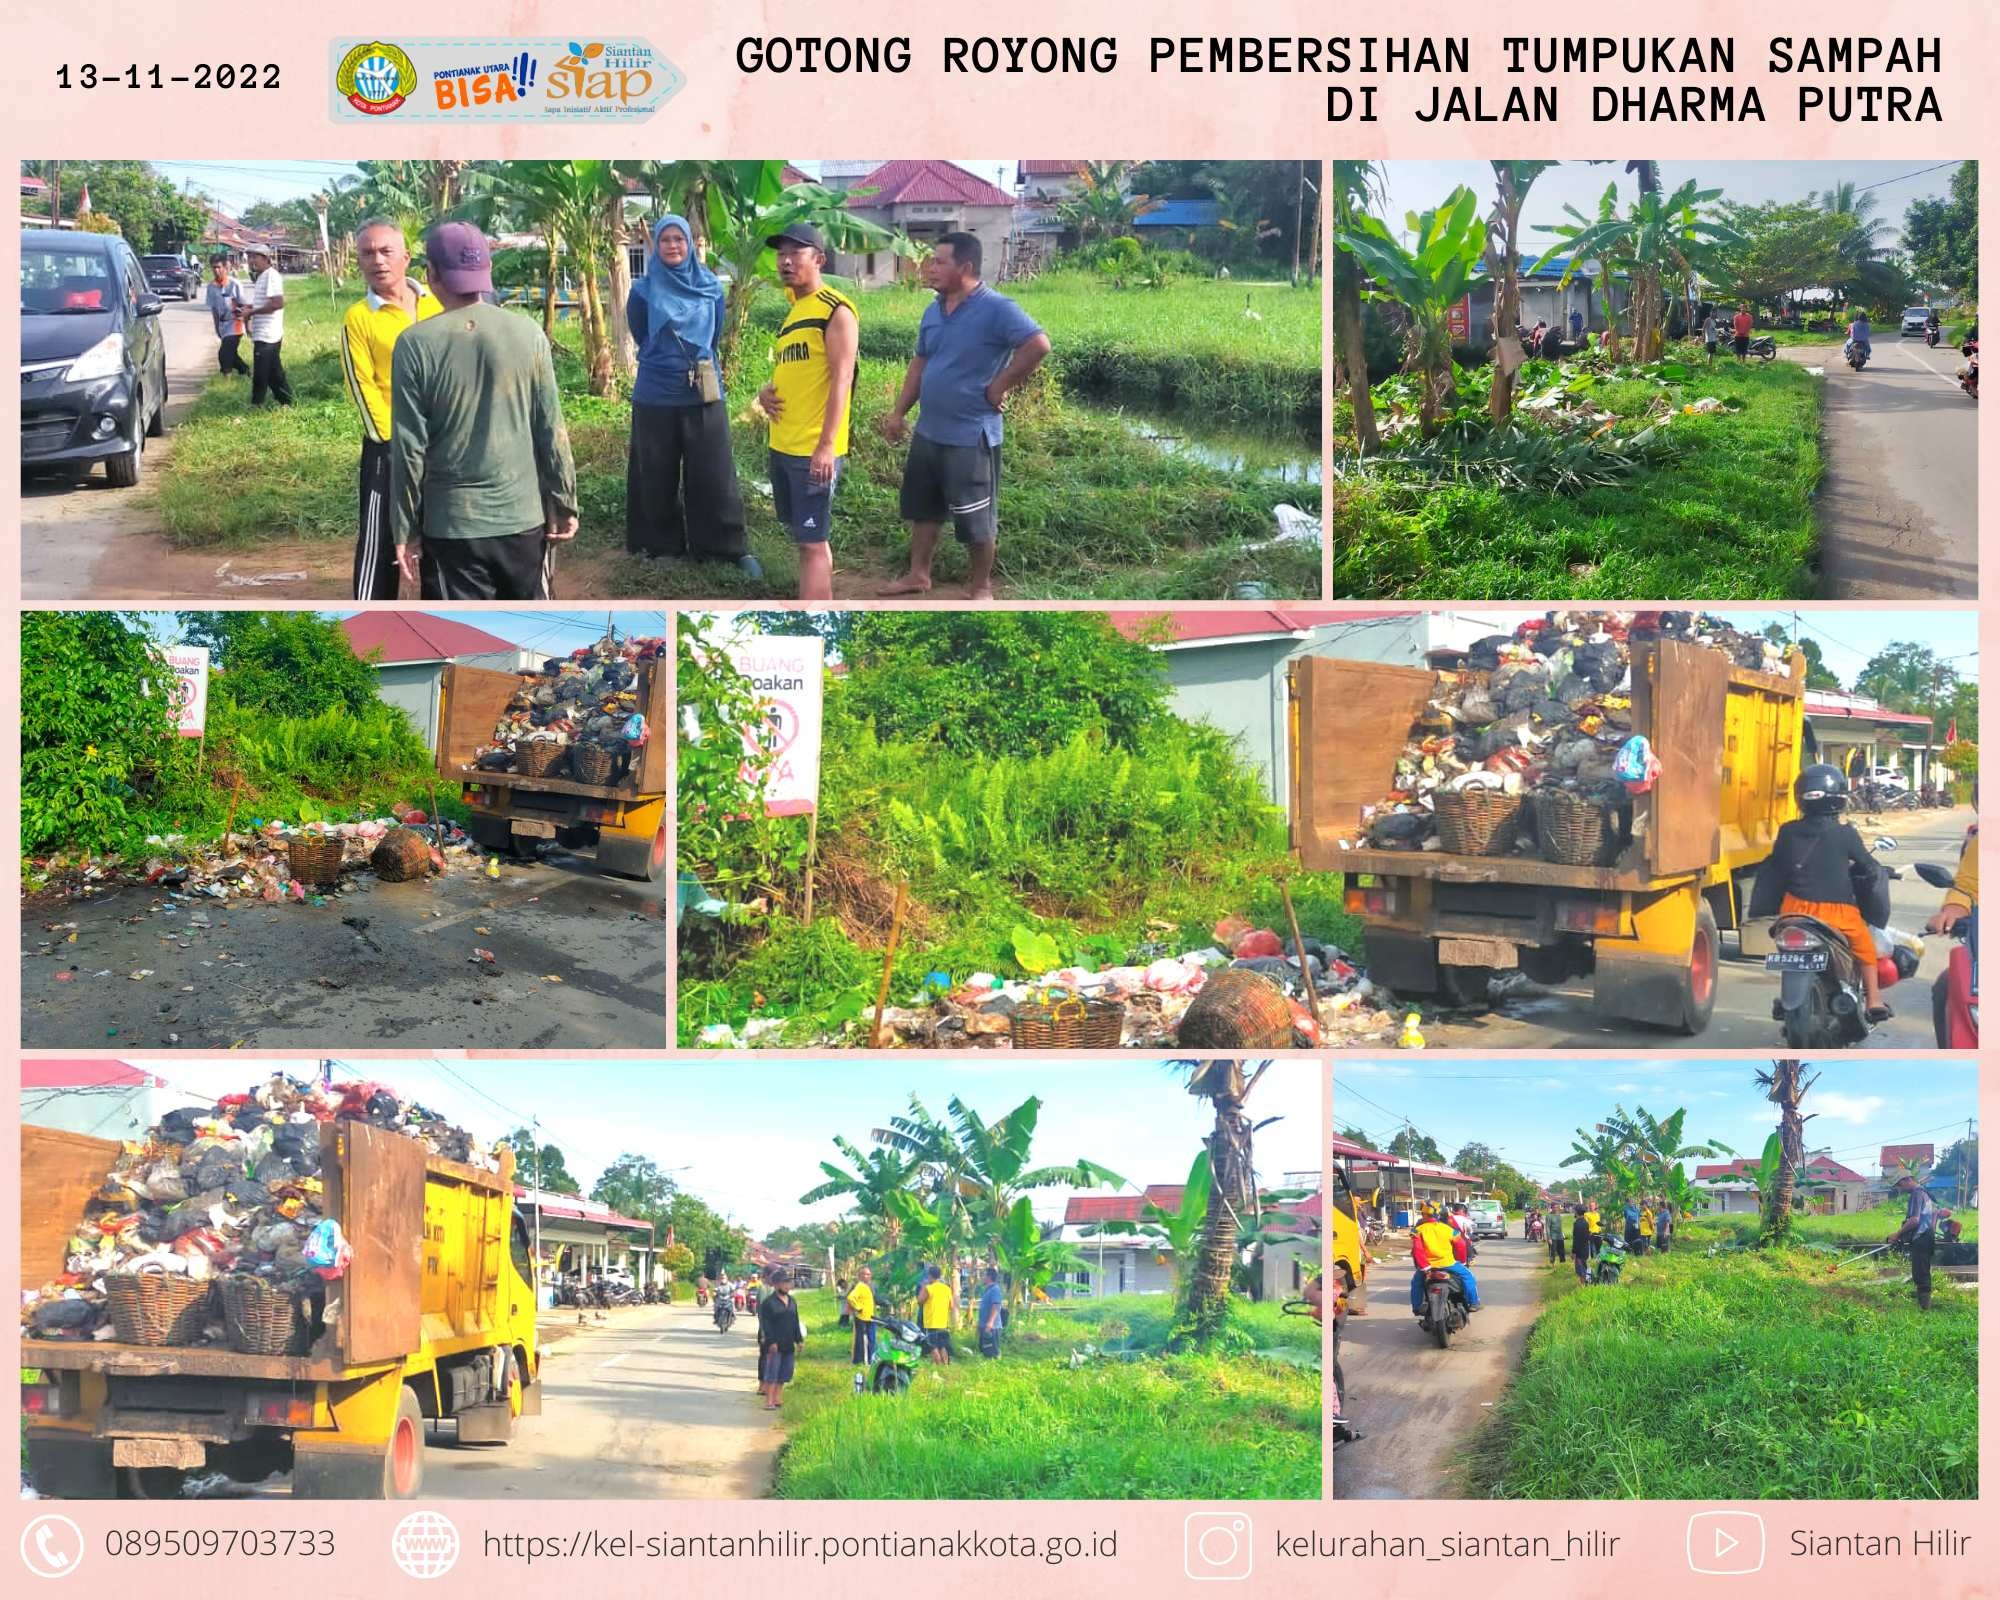 Gotong Royong Pembersihan Tumpukan Sampah di Jl. Dharma Putra